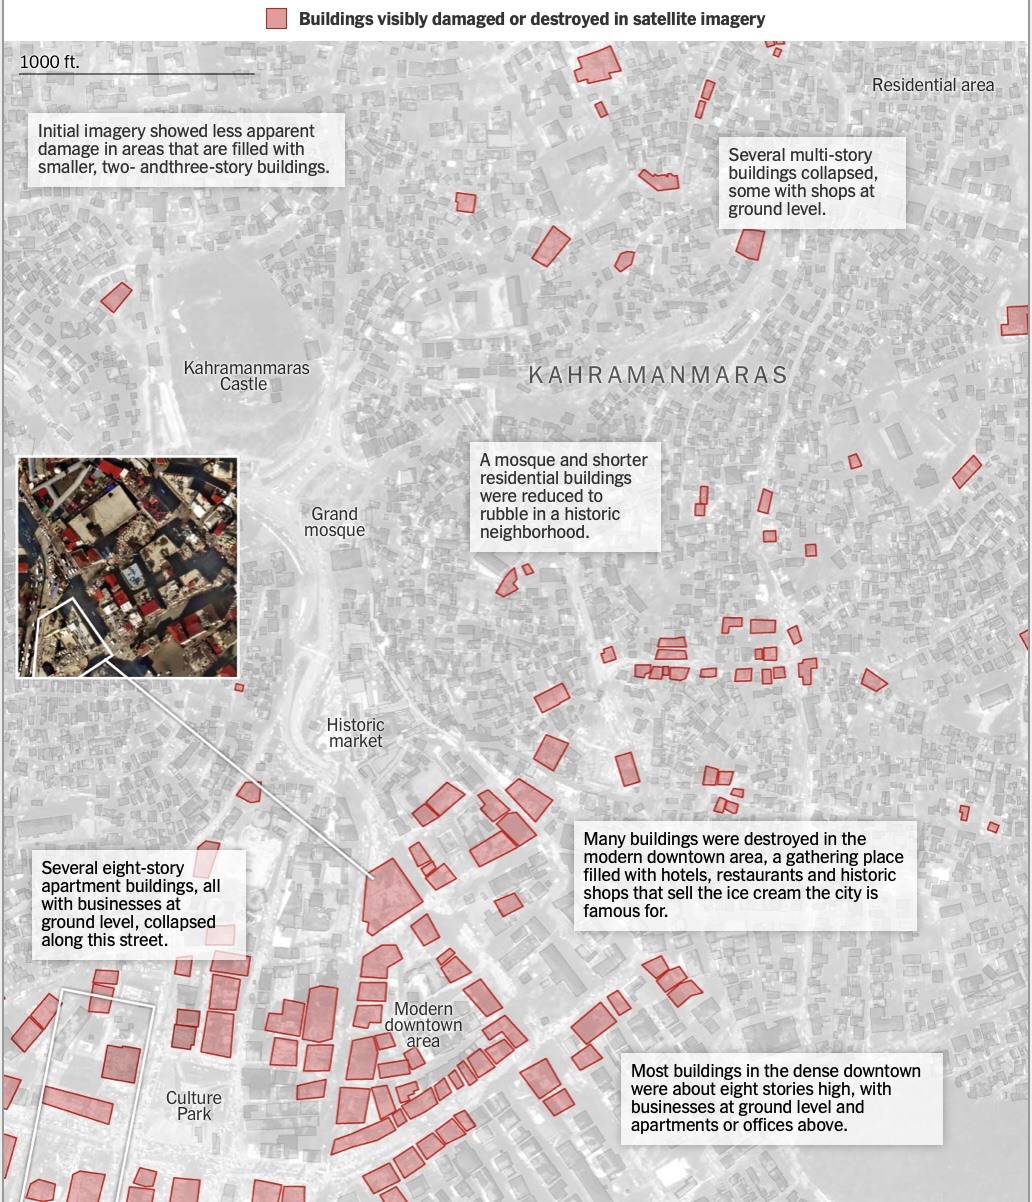 Vị trí các toà nhà bị phá huỷ hoặc hư hại (ô màu hồng) tại thành phố Kahramanmaras sau trận động đất ngày 6.2. Ảnh vệ tinh của Planet Labs